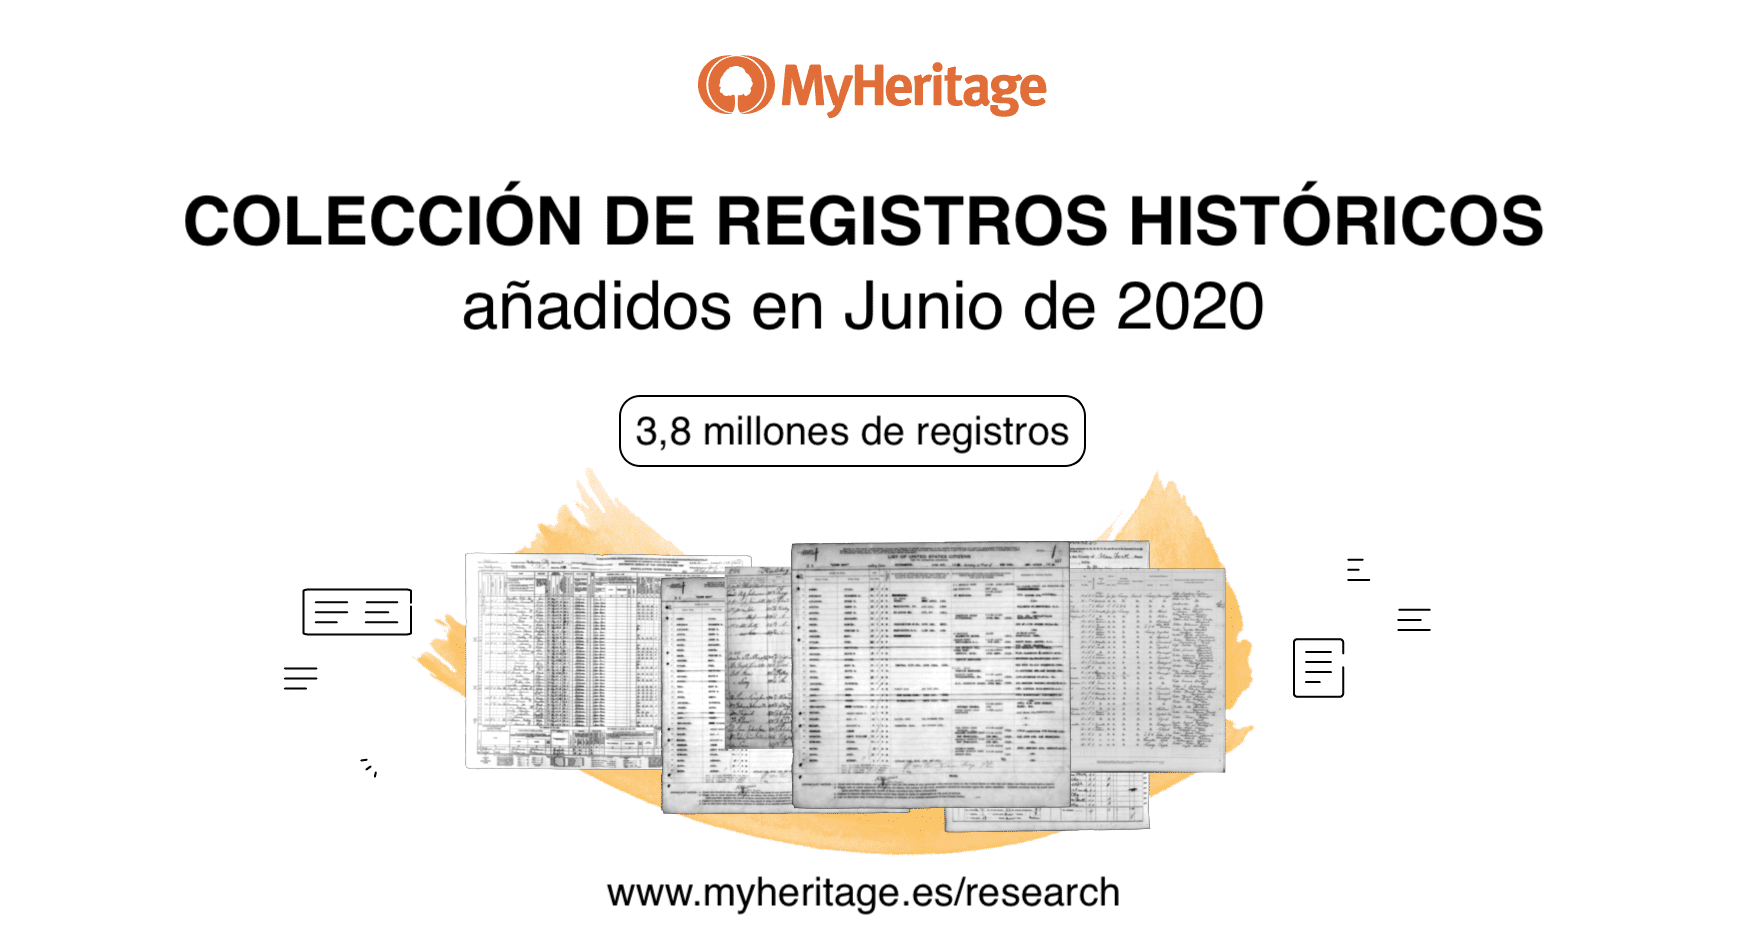 Colecciones de Registros Históricos Añadidas en Junio de 2020